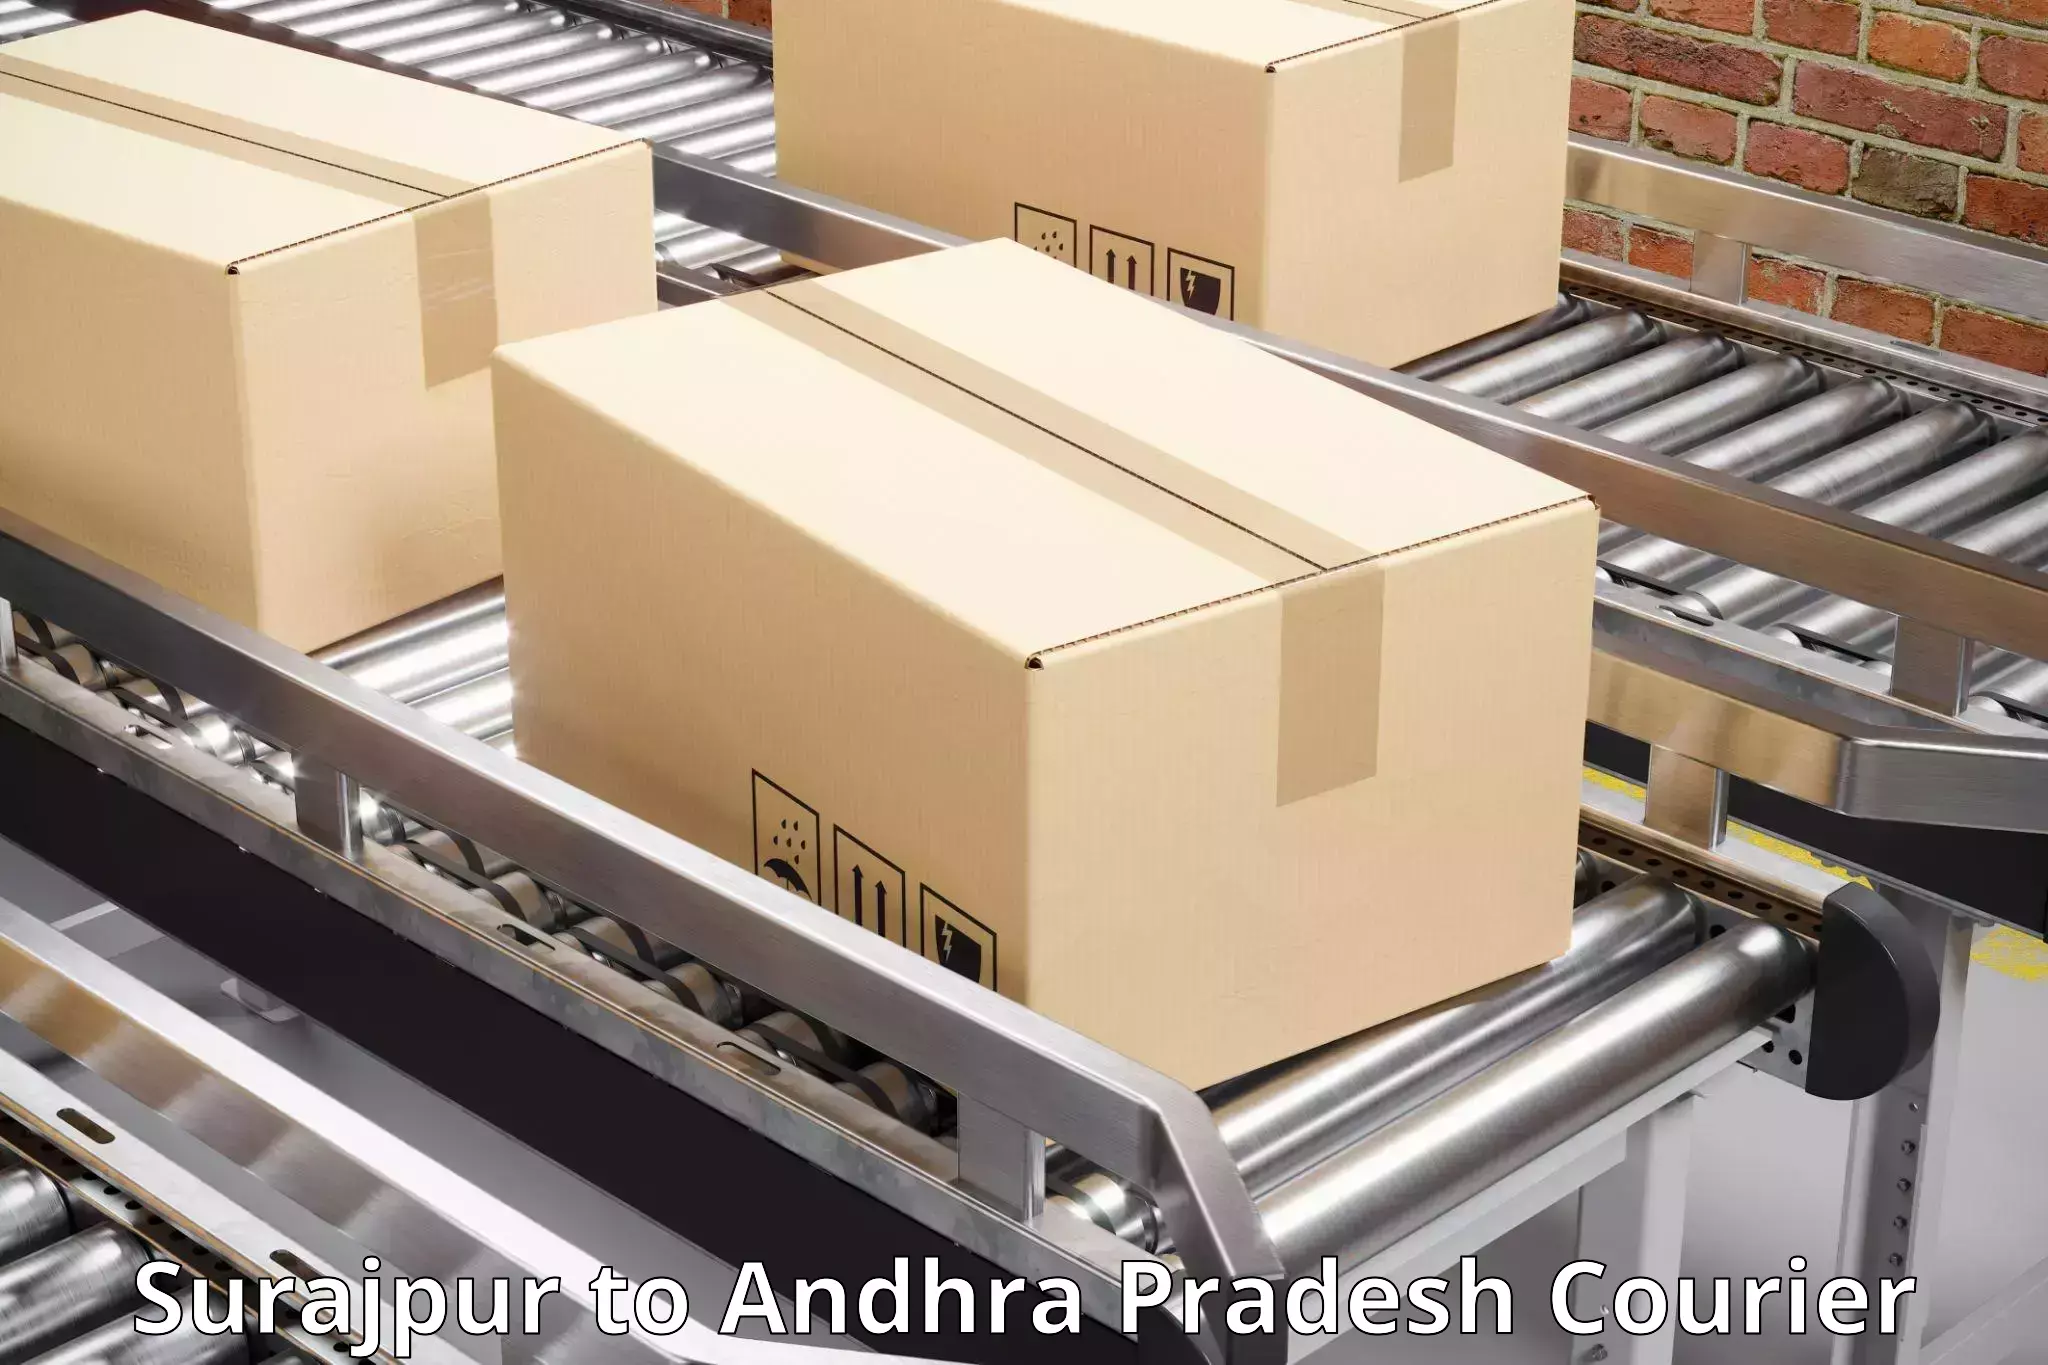 Courier service comparison Surajpur to Ichchapuram